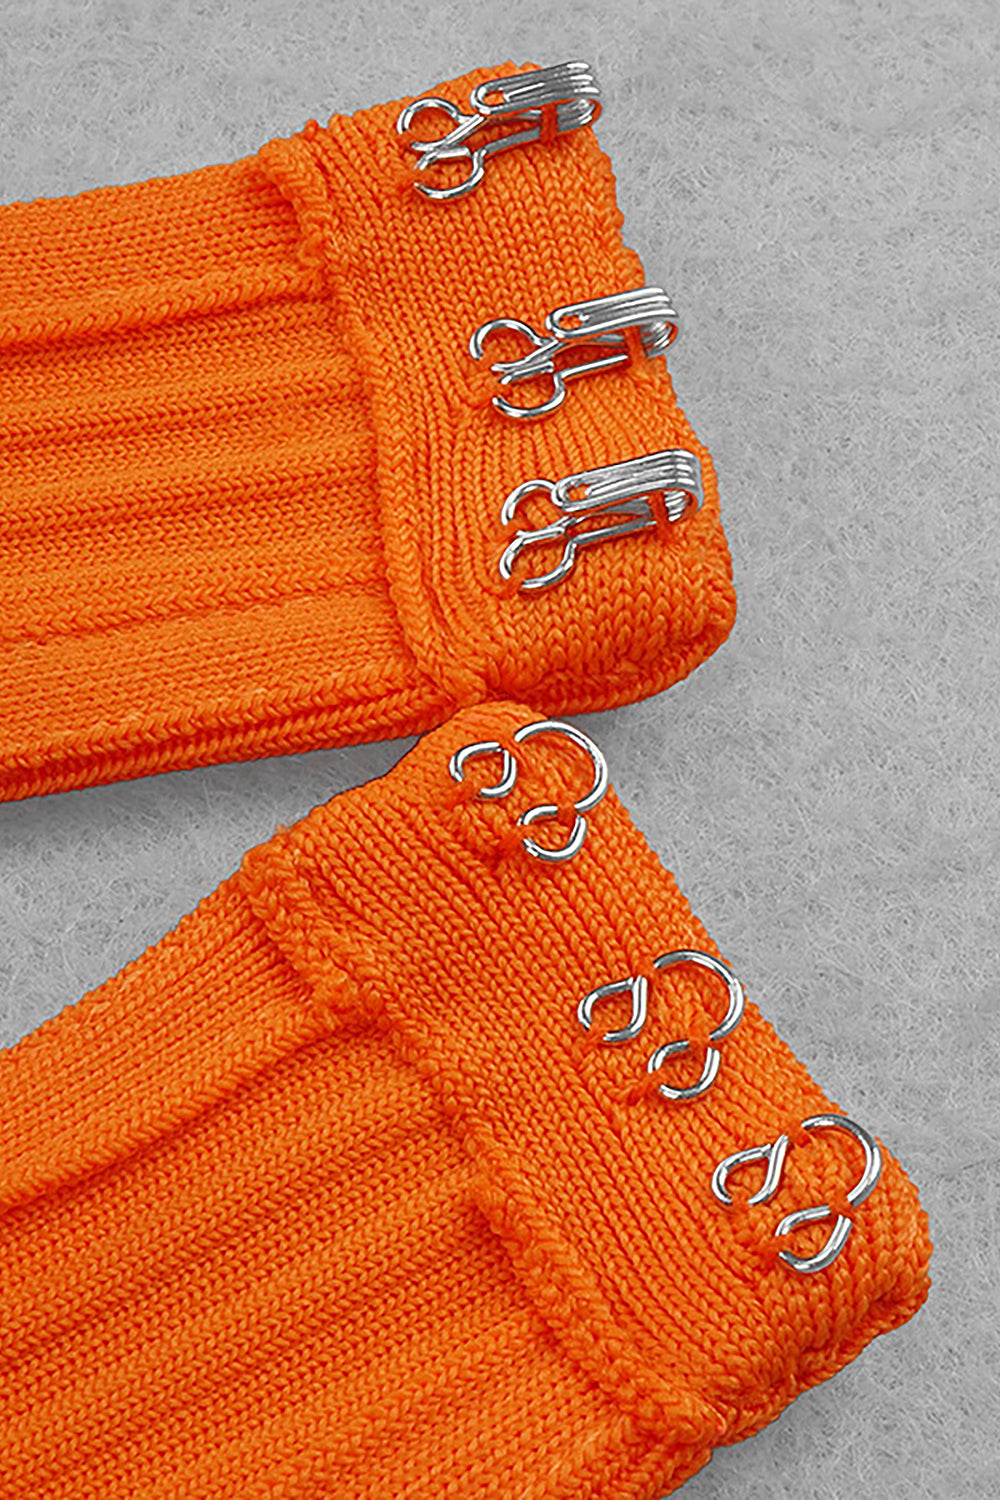 Vestido vendaje ahuecado de manga larga cruzado naranja